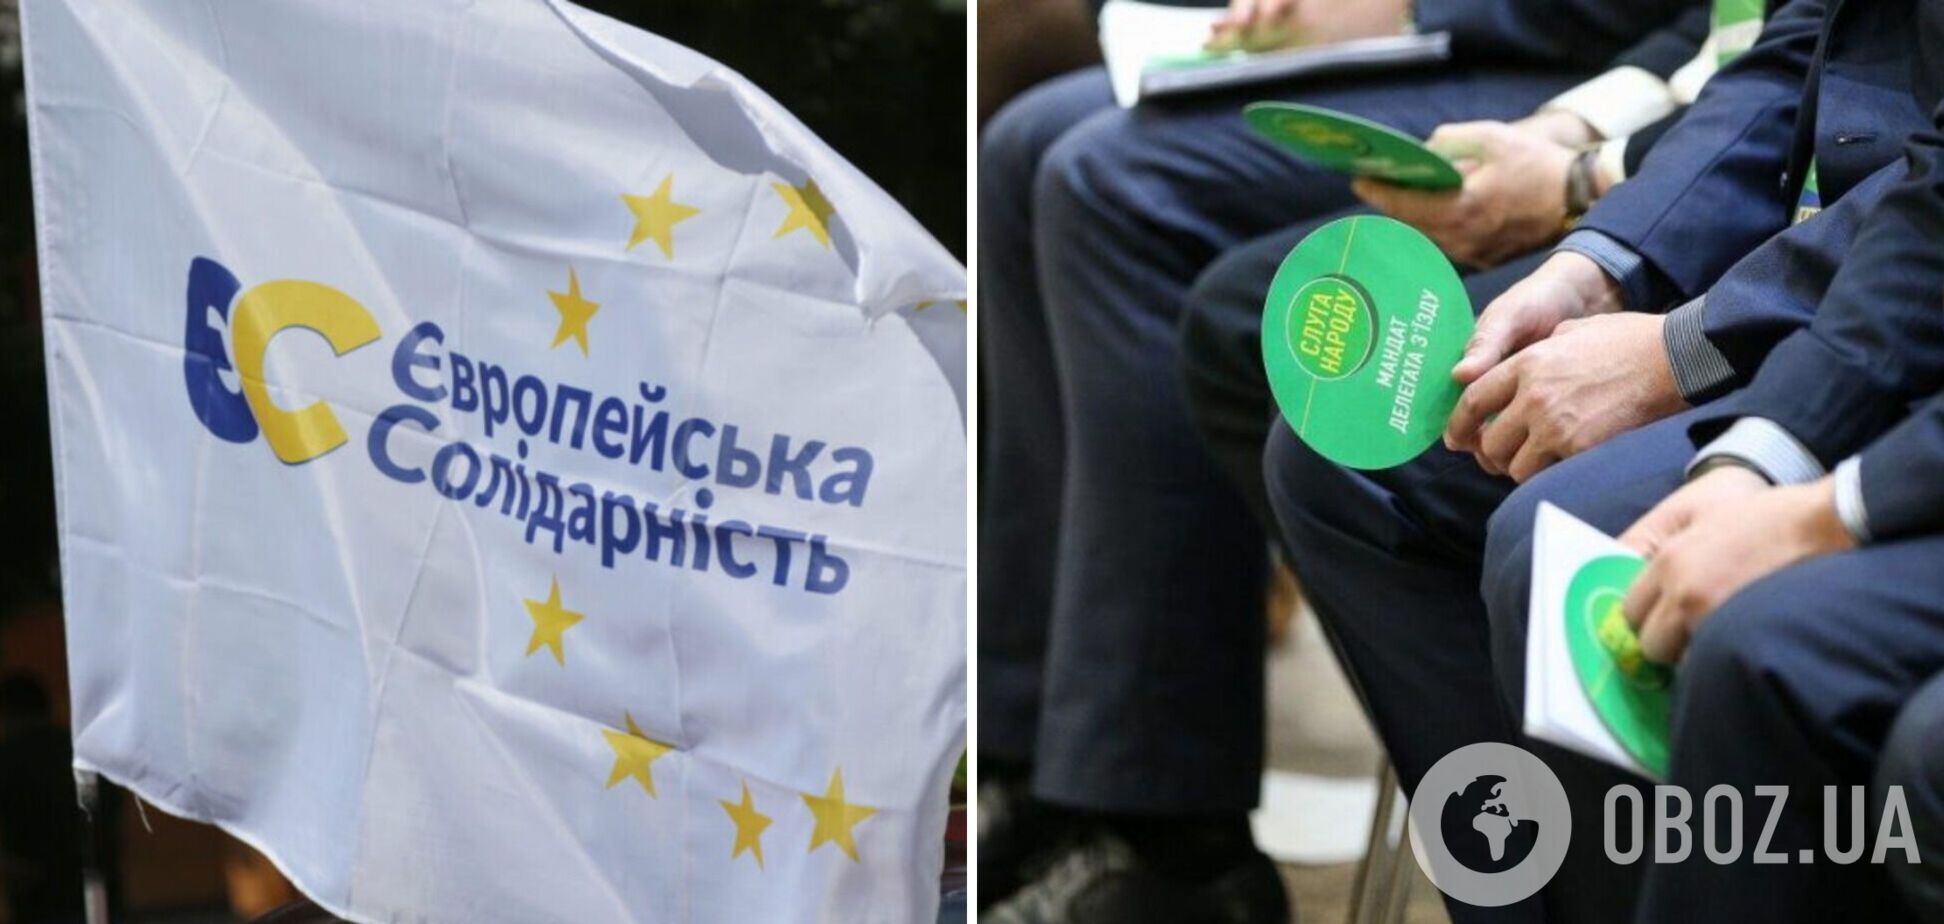 Рейтинг 'Слуги народу' продовжує падати, головною опозиційною силою українці вважають 'ЄС' – соцопитування